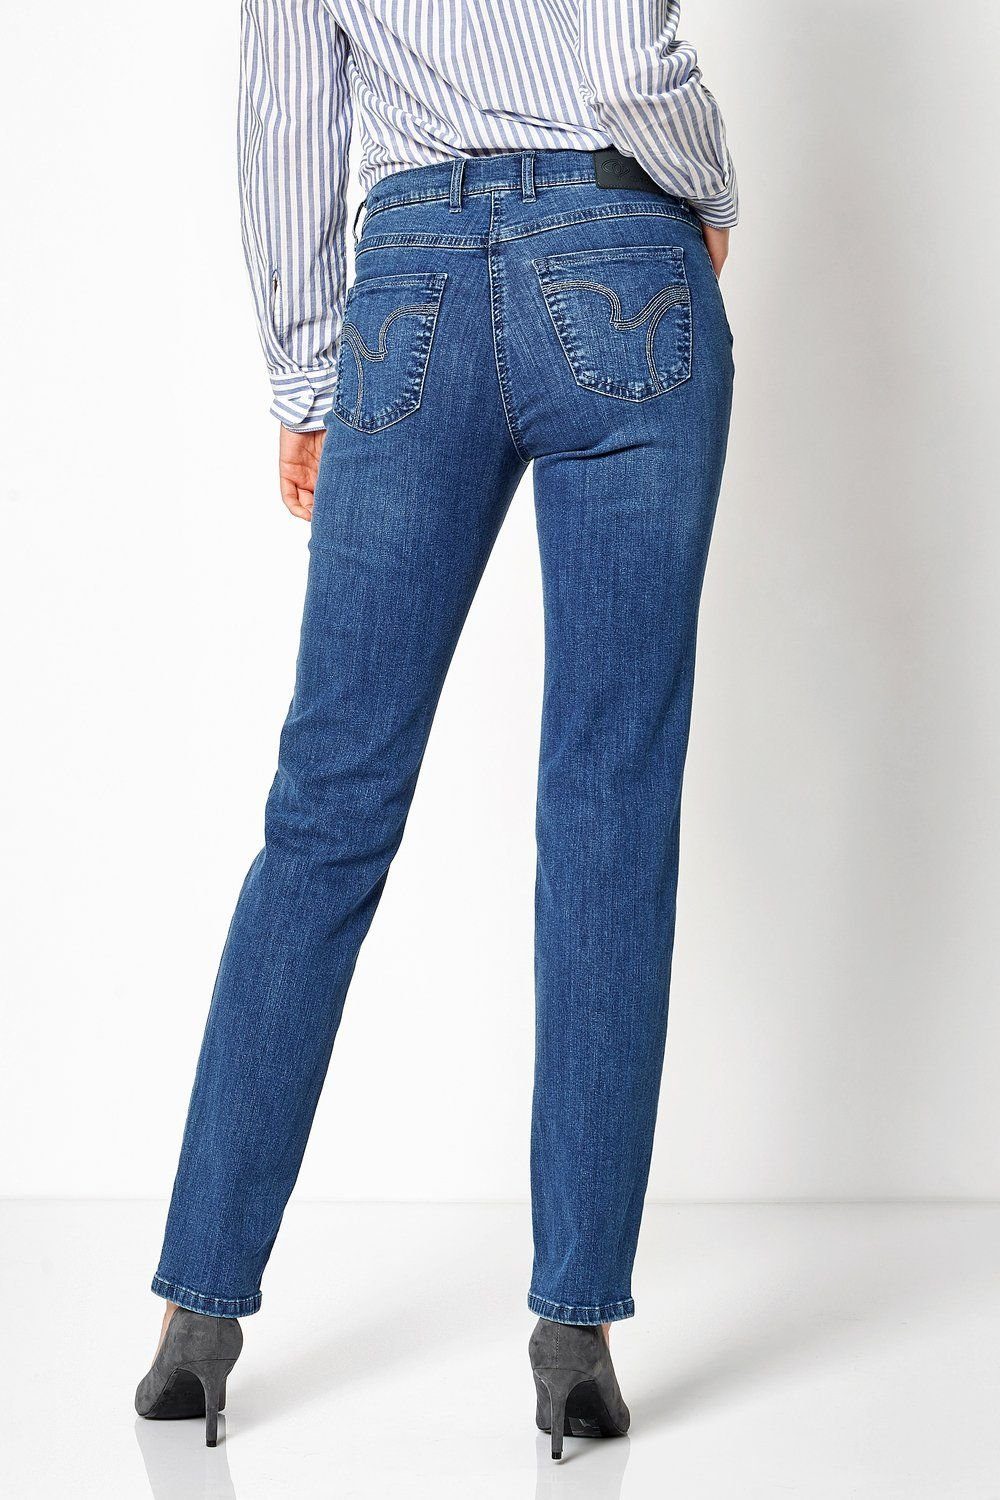 TONI 5-Pocket-Jeans mid blue used